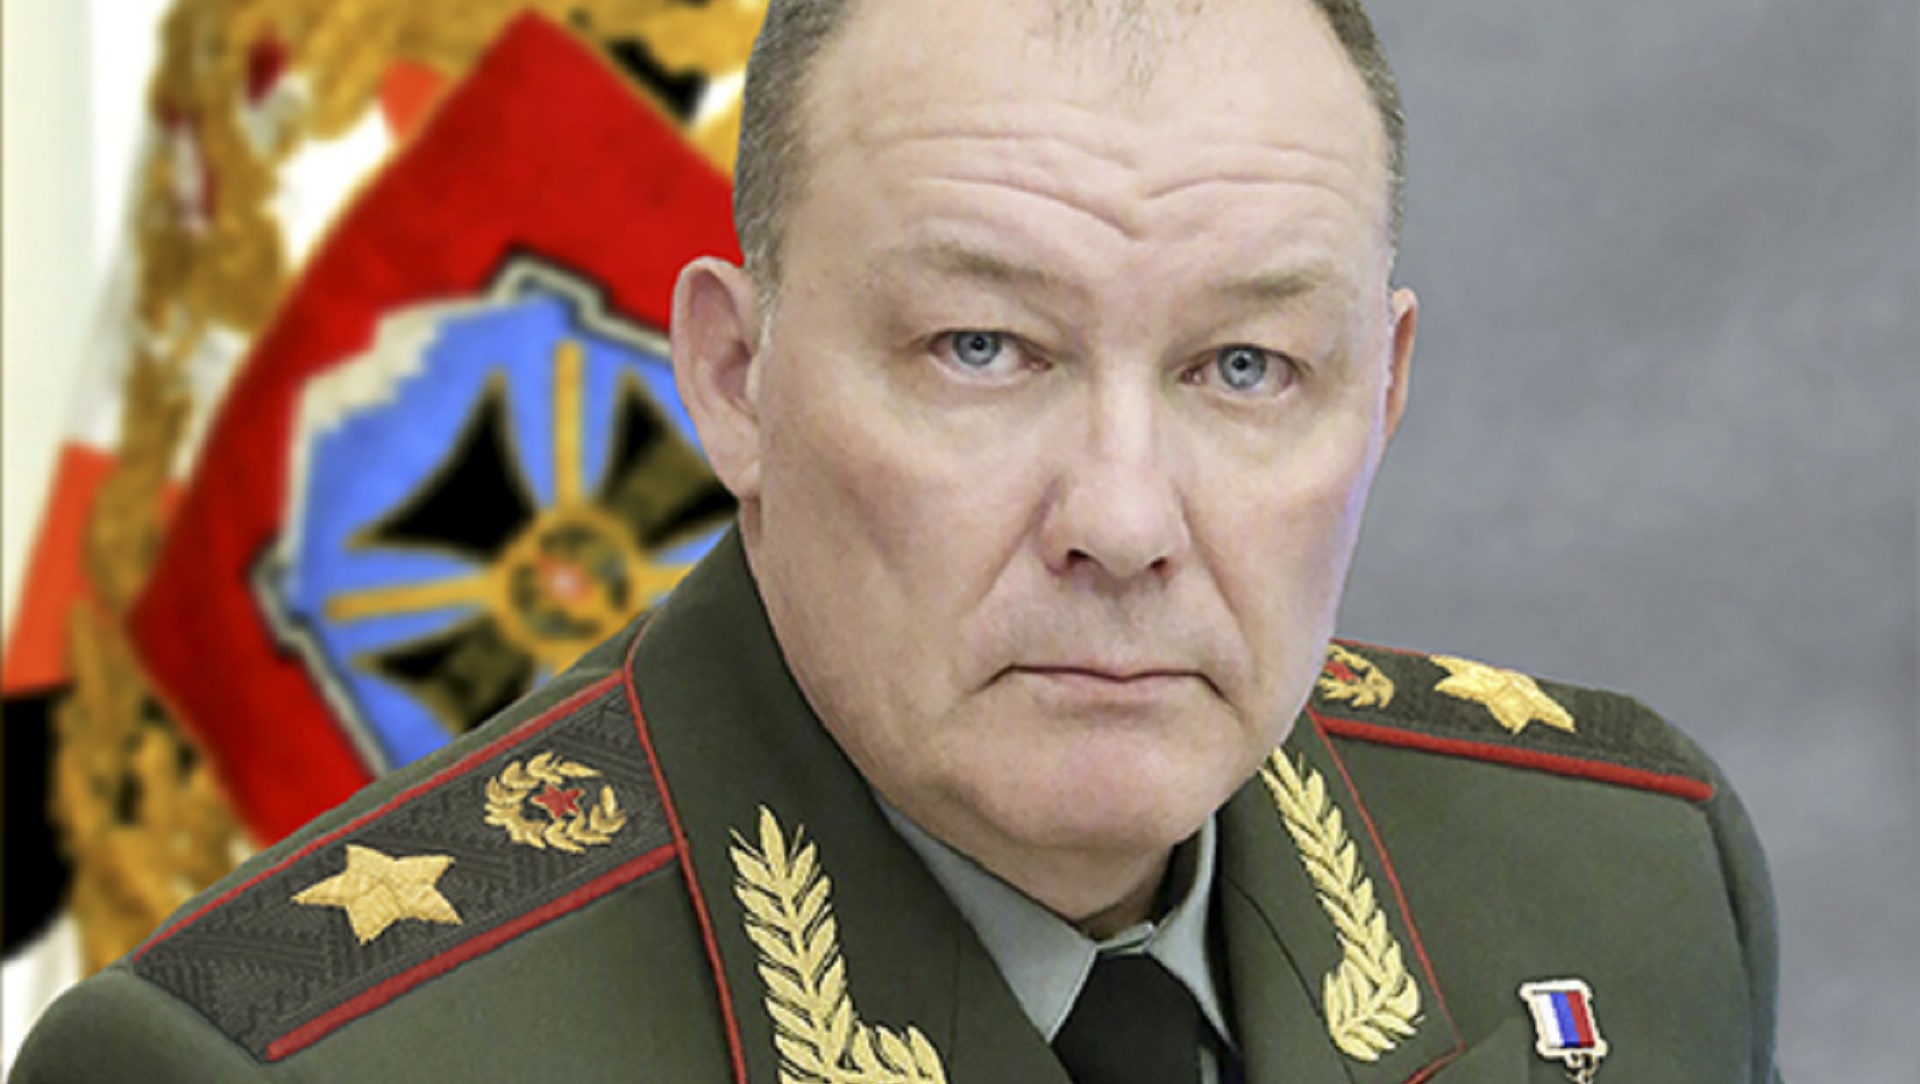 Chi è il generale Dvornikov, boia della Siria mandato in Ucraina per esportare i suoi metodi brutali